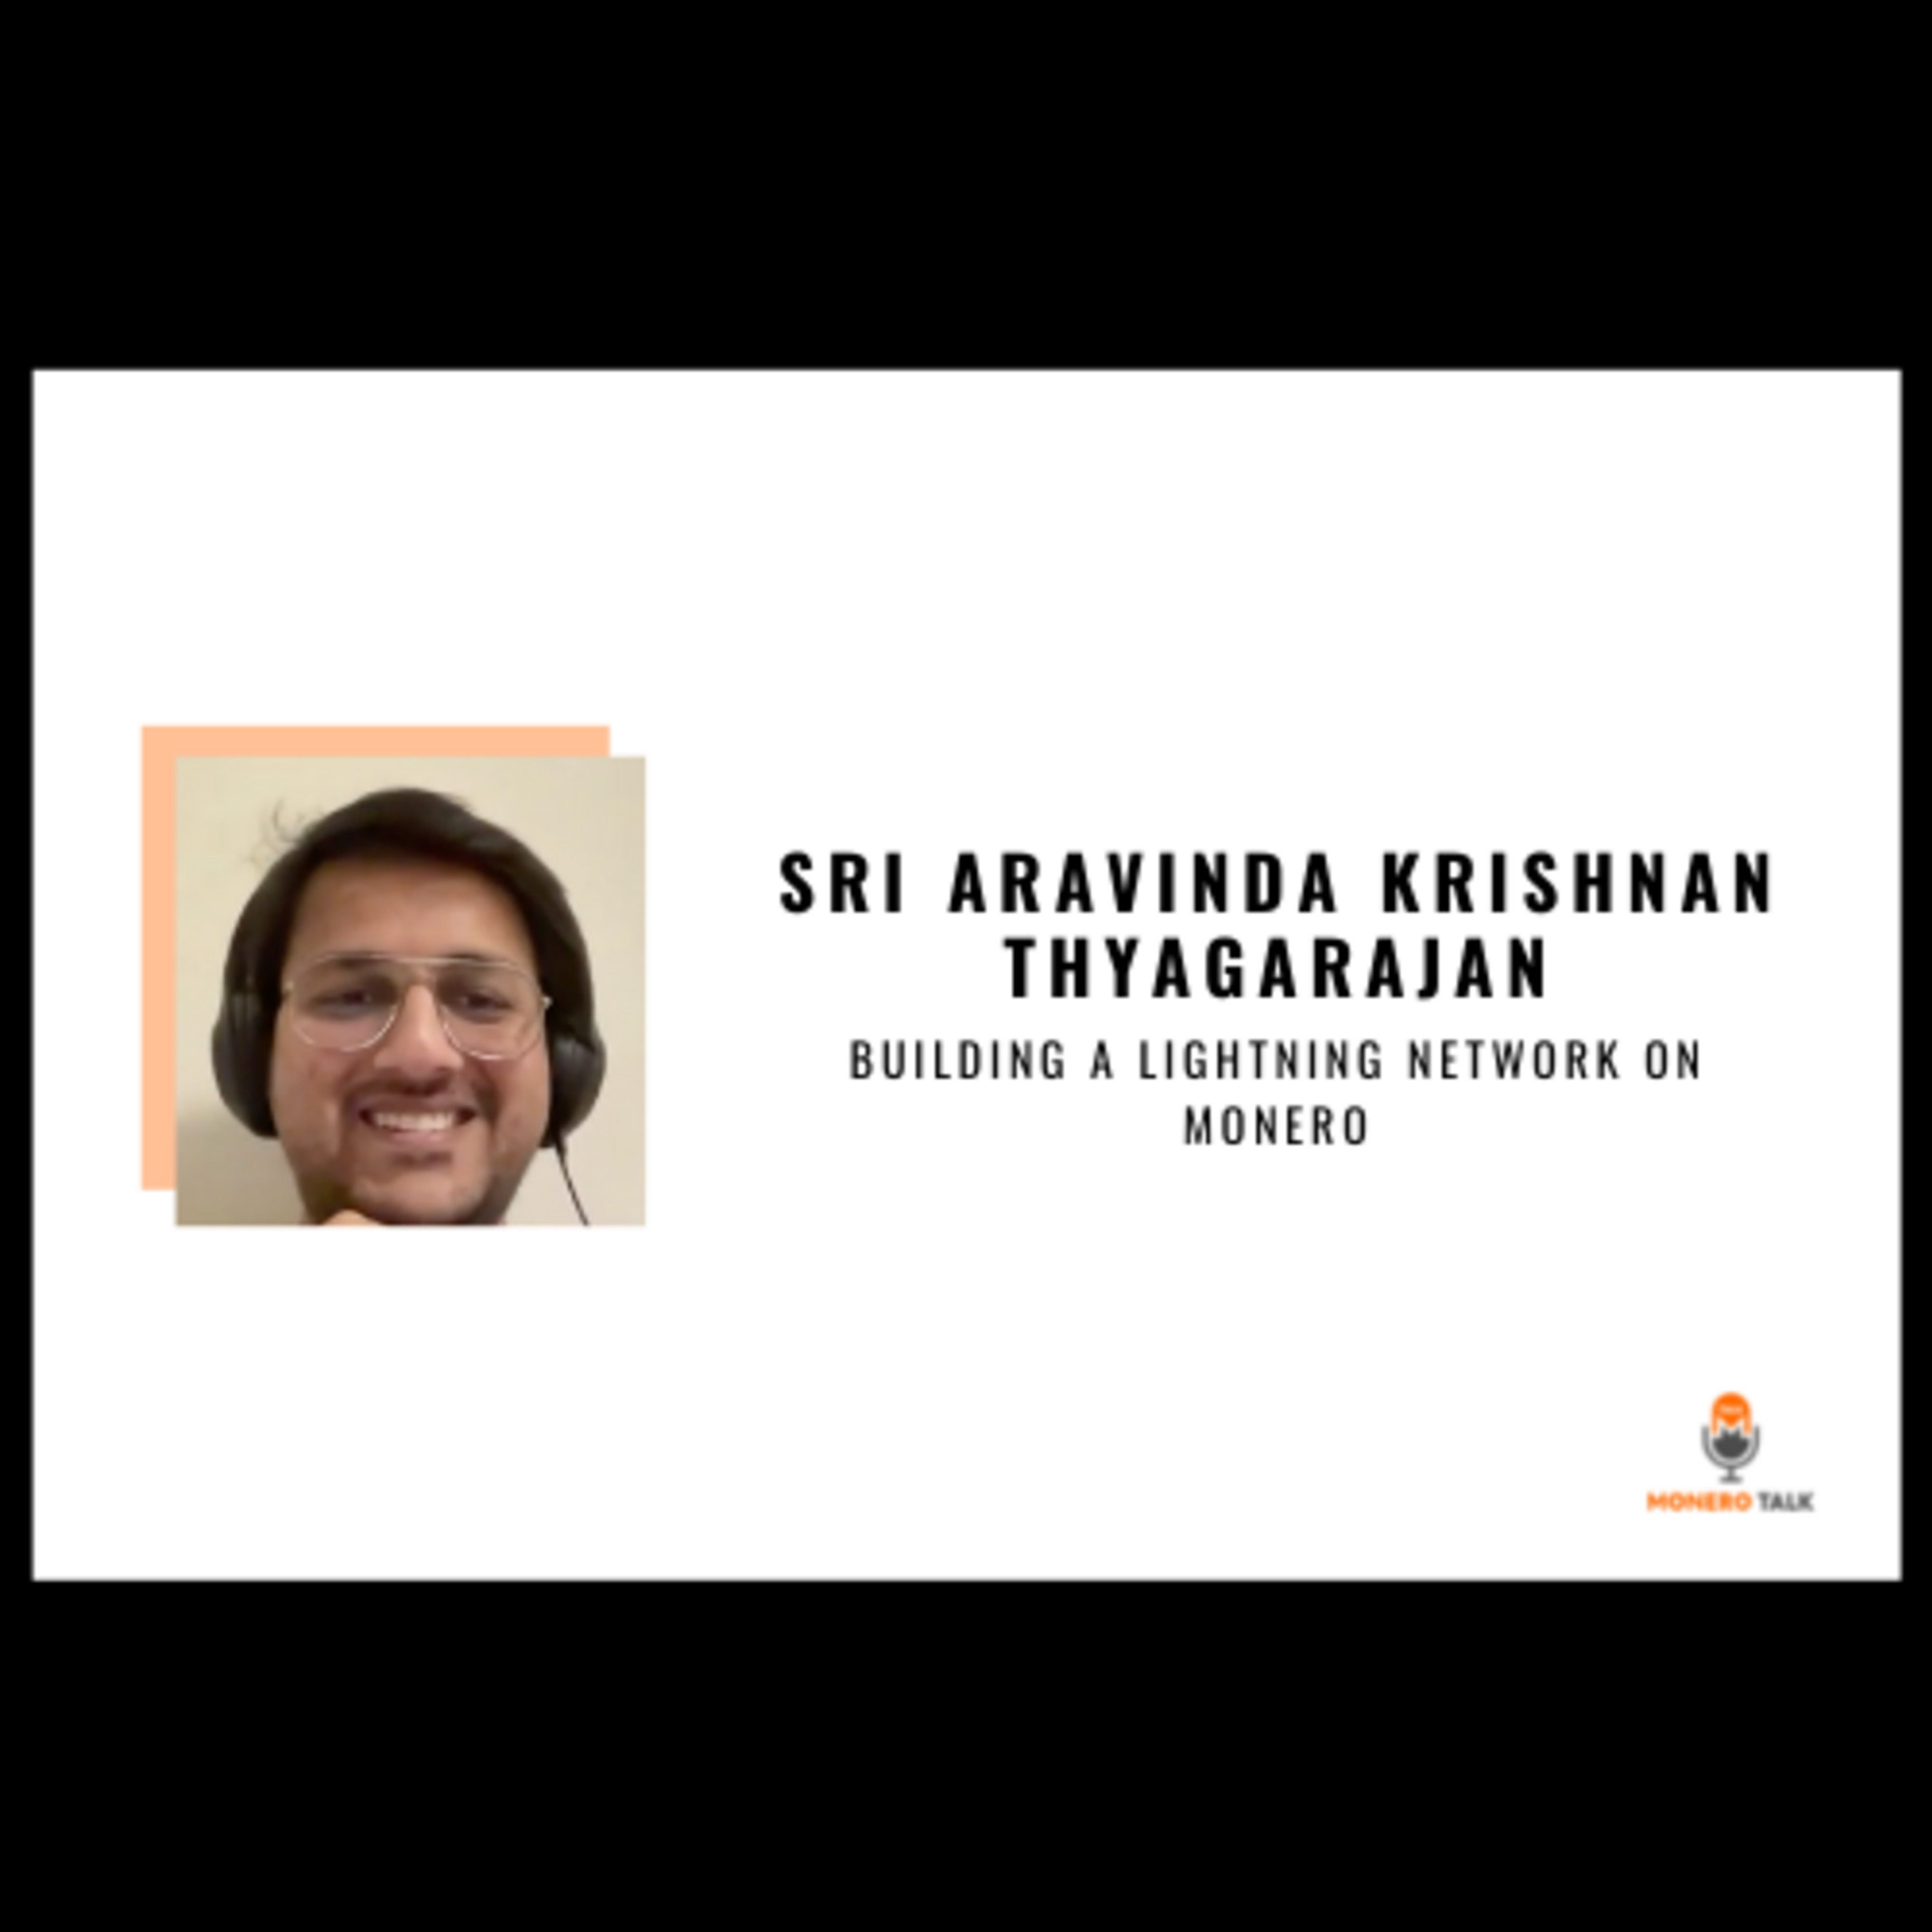 Sri Aravinda Krishnan Thyagarajan: Building a Lightning Network on Monero